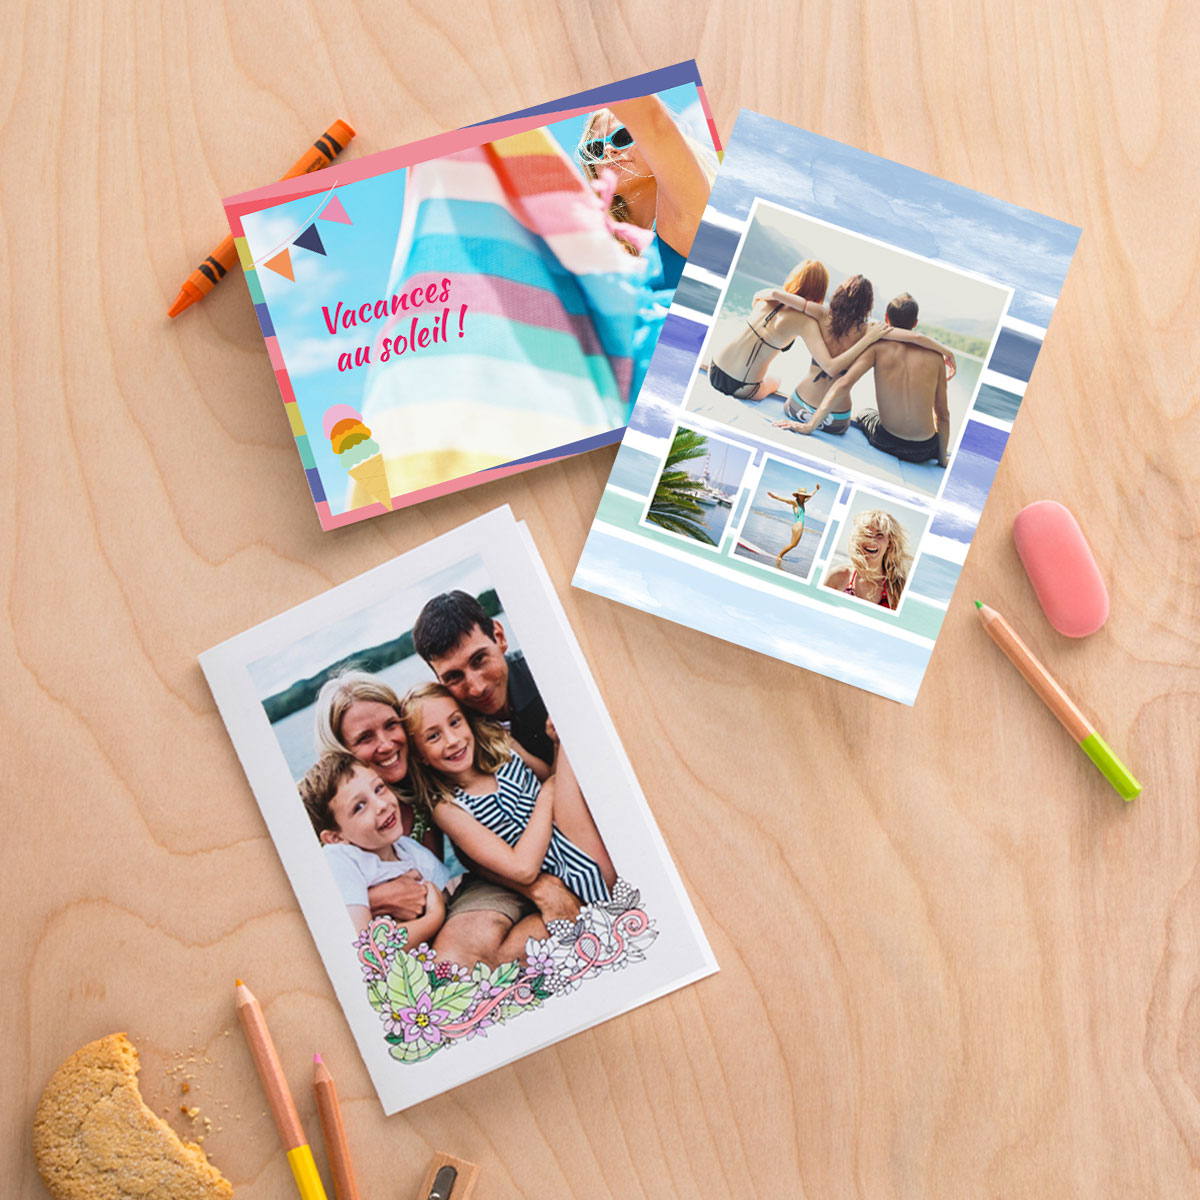 Et si cette année votre carte postale estivale était personnalisée avec vos photos de famille 👨‍👩‍👧‍👦

Retrouvez la liste des kiosks Kodak Moments en Bio 🤗